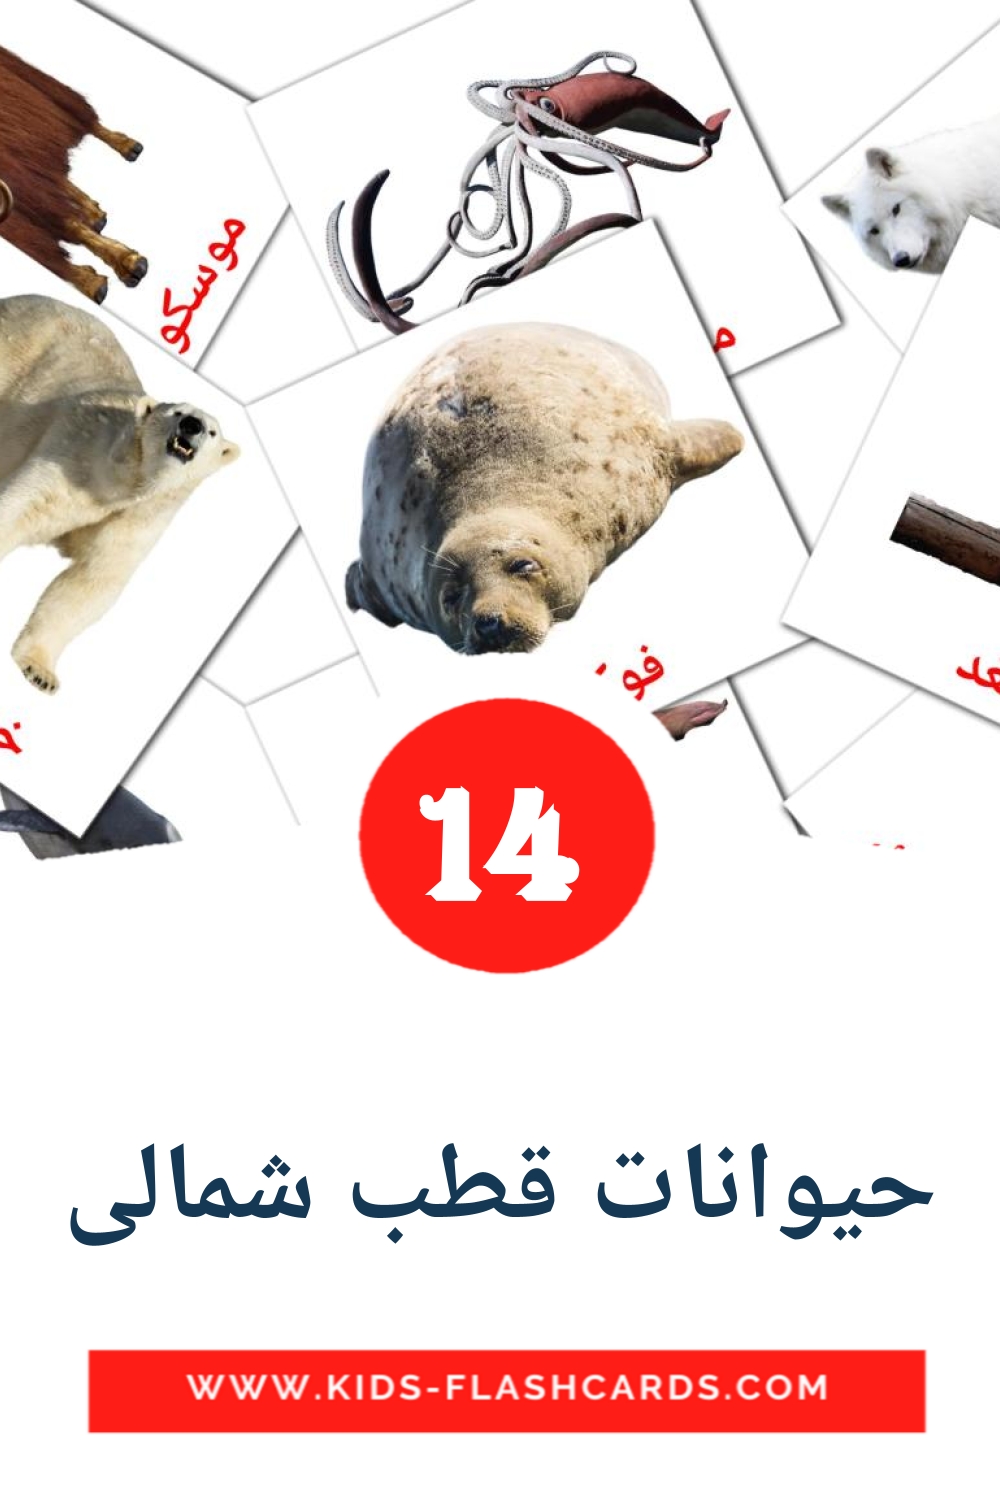 14 Cartões com Imagens de حیوانات قطب شمالی para Jardim de Infância em persa